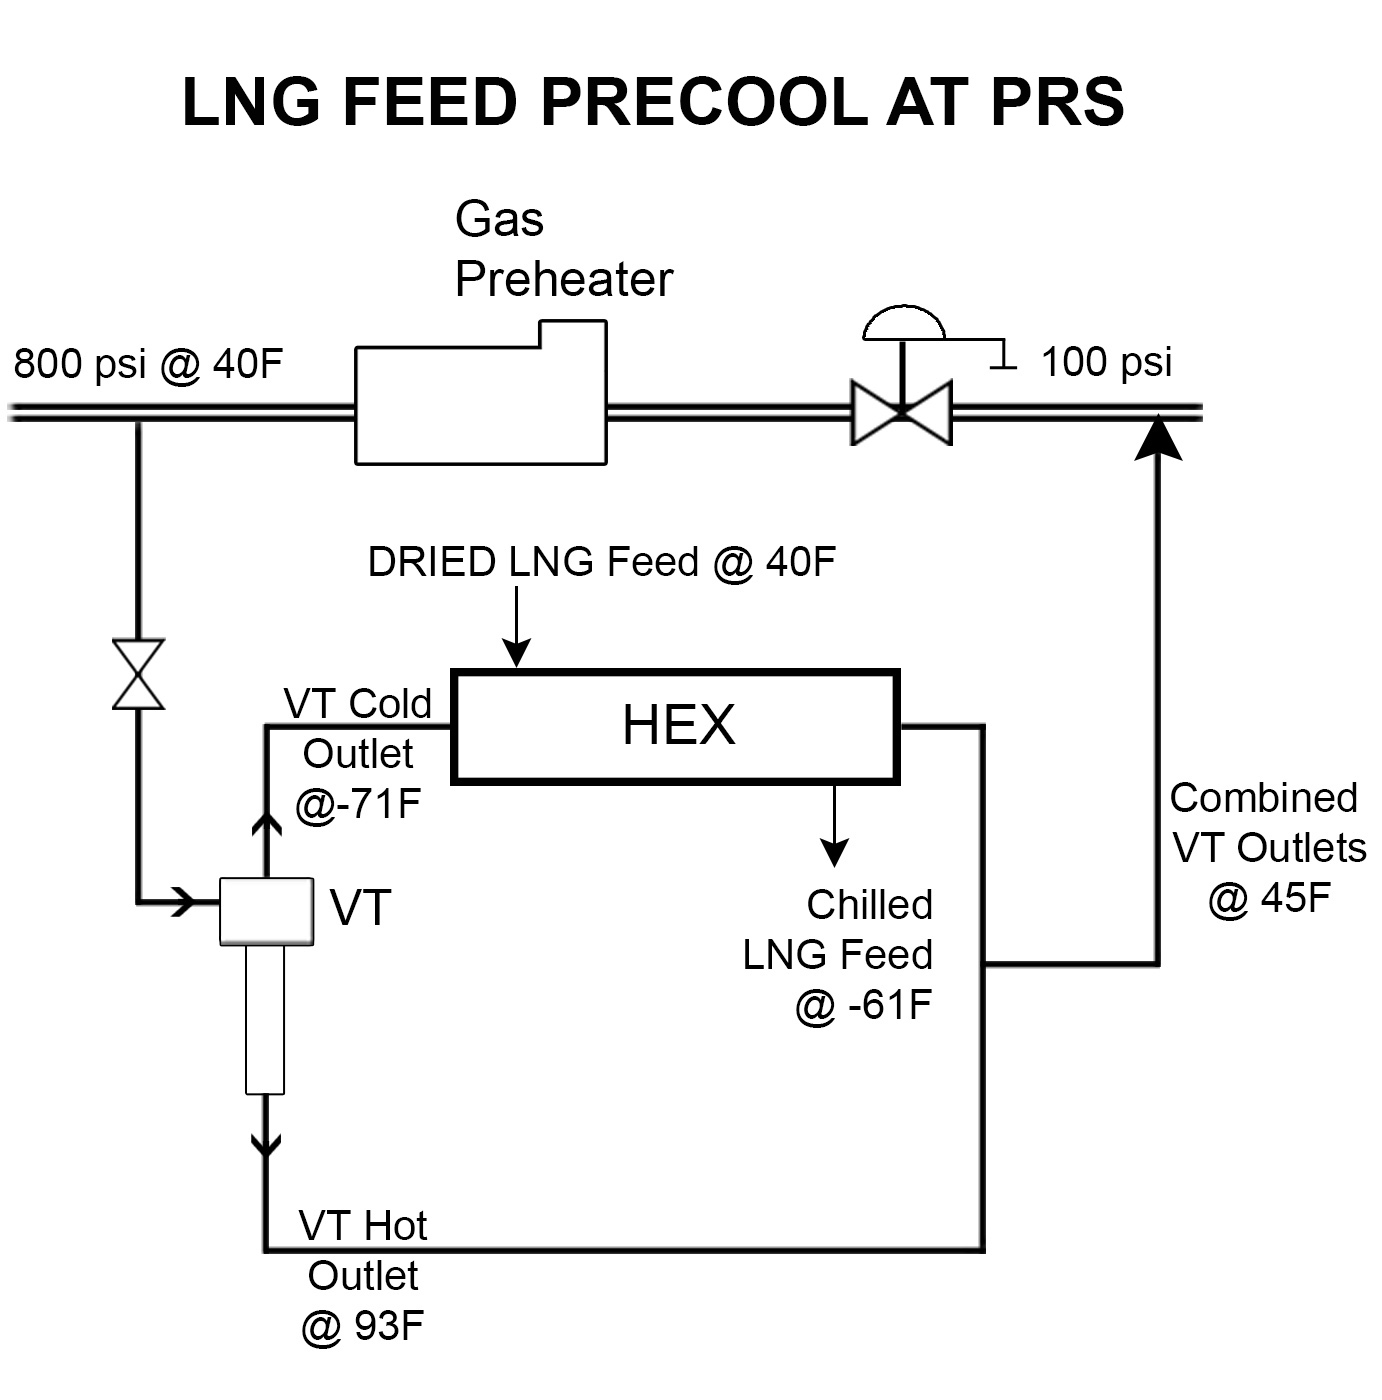 LNG Feed Precool at PRS Diagram